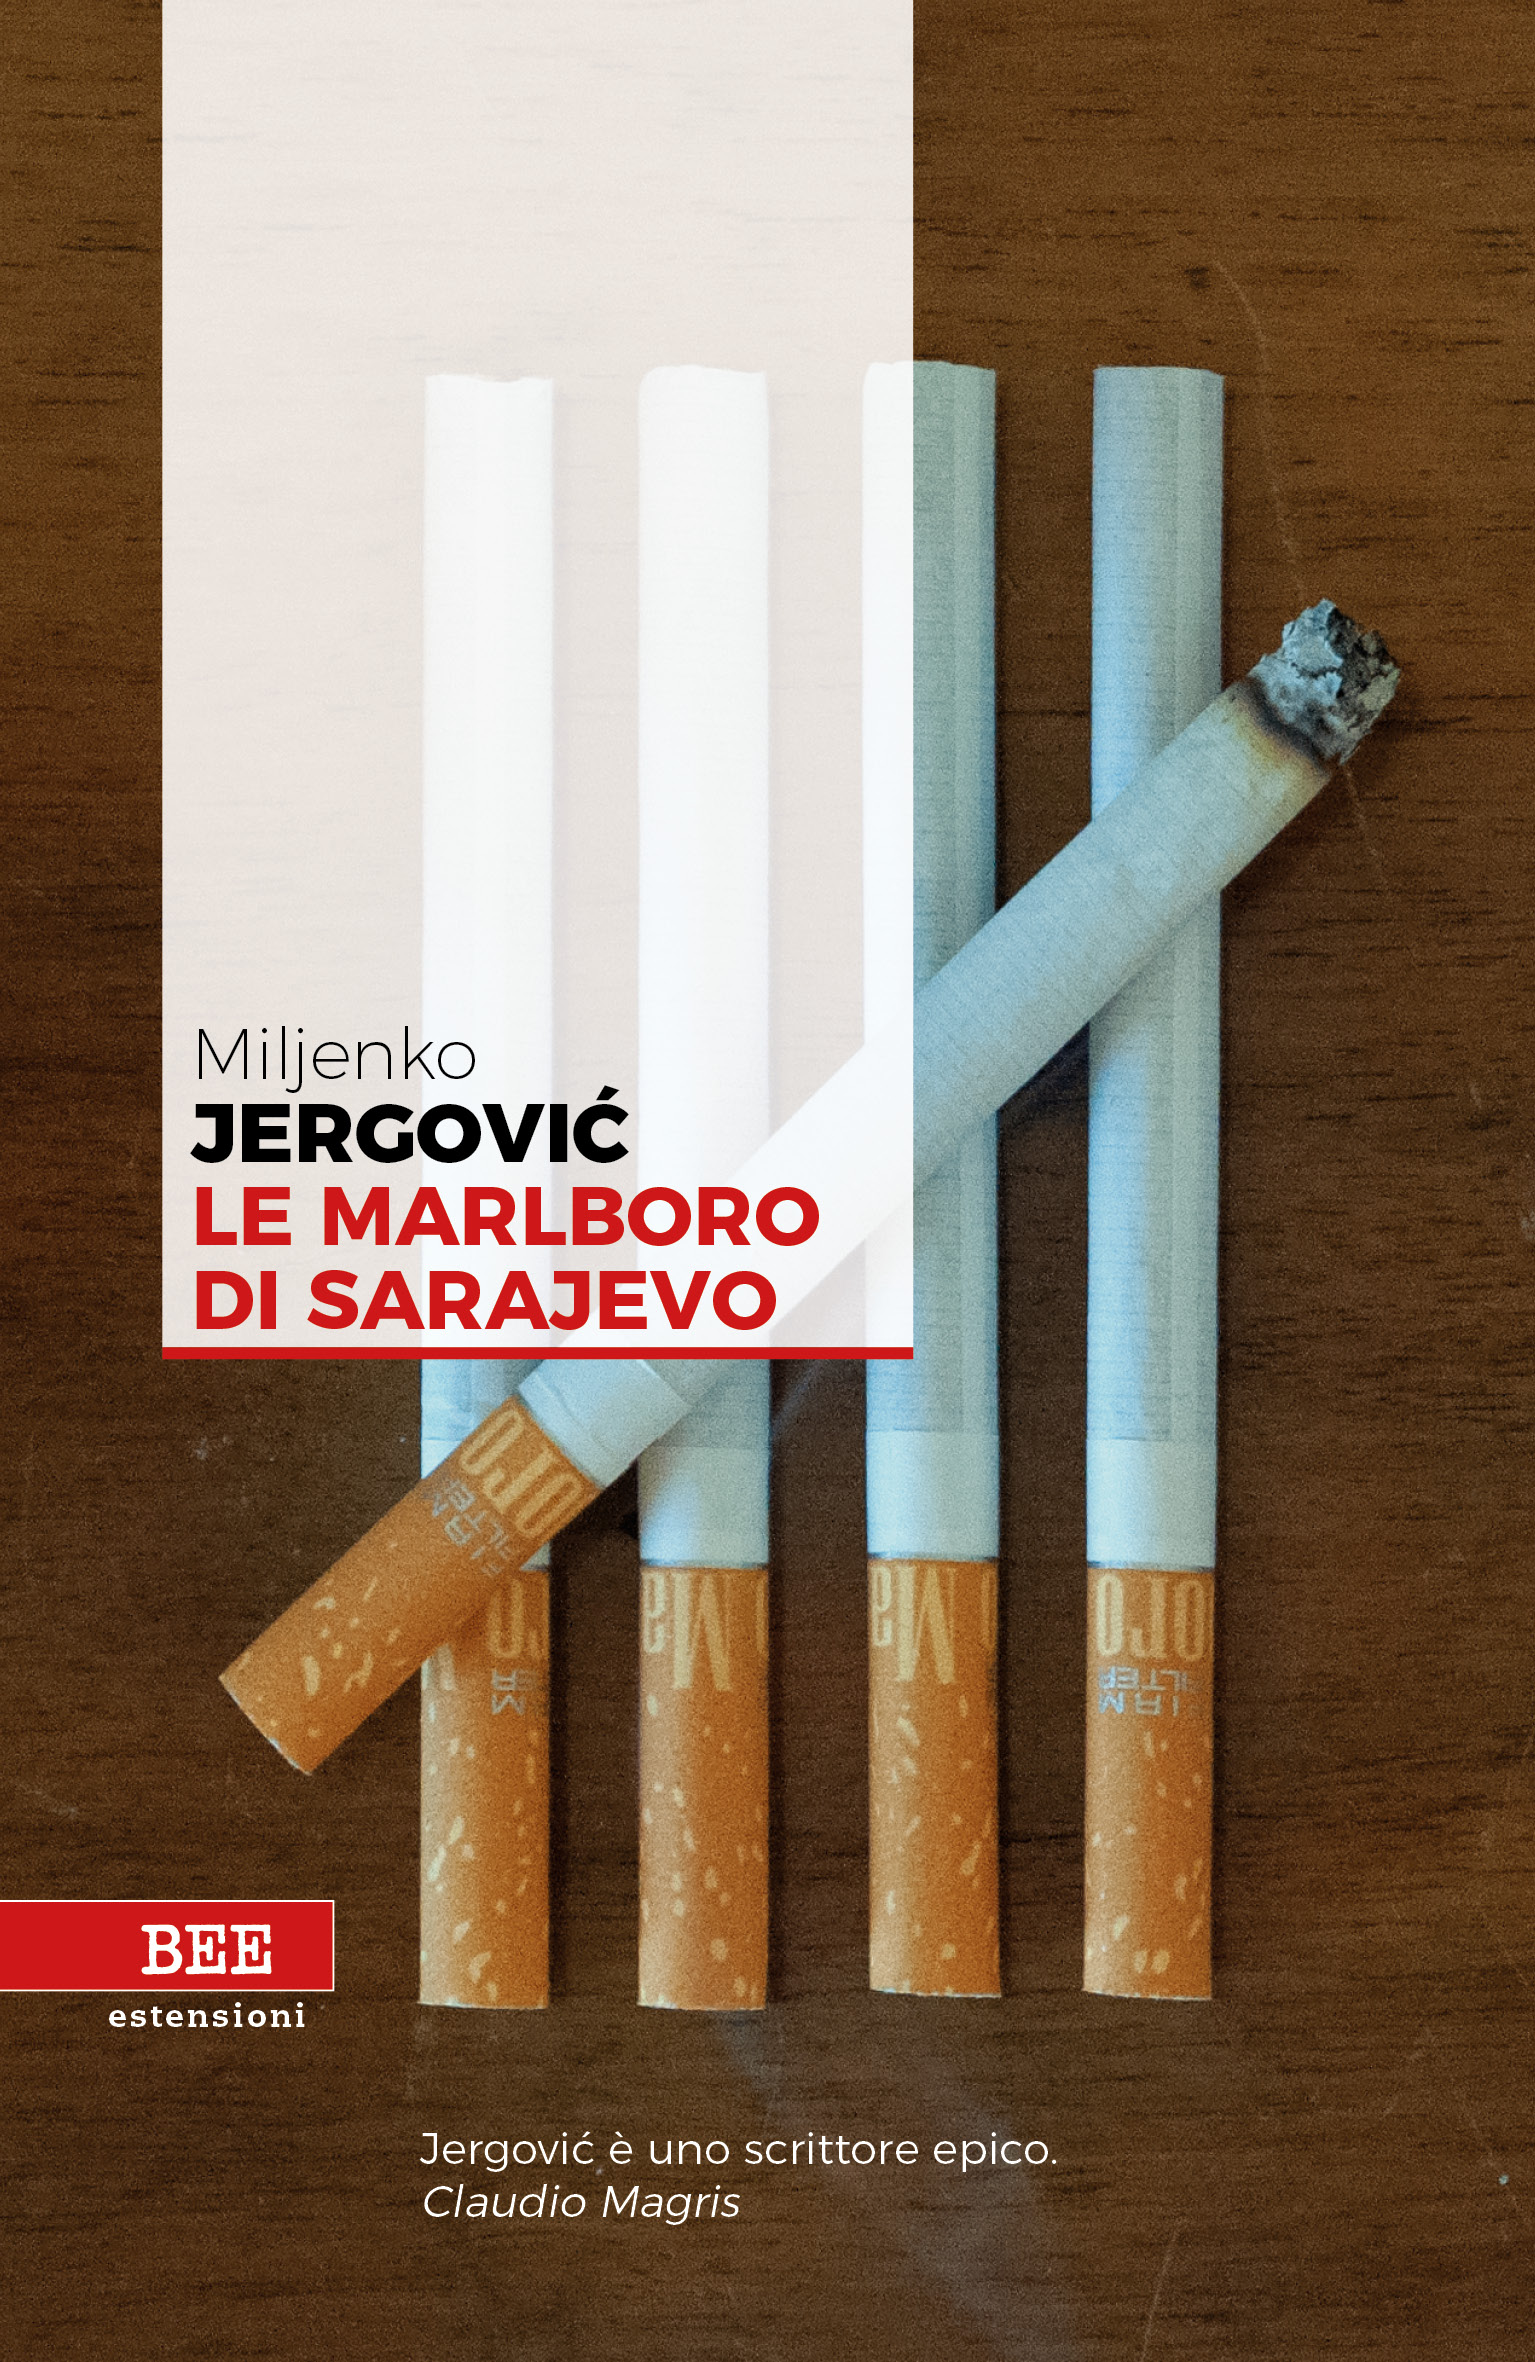 Le Marlboro di Sarajevo, lo splendido libro di Miljenko Jergovic -  Modulazioni Temporali